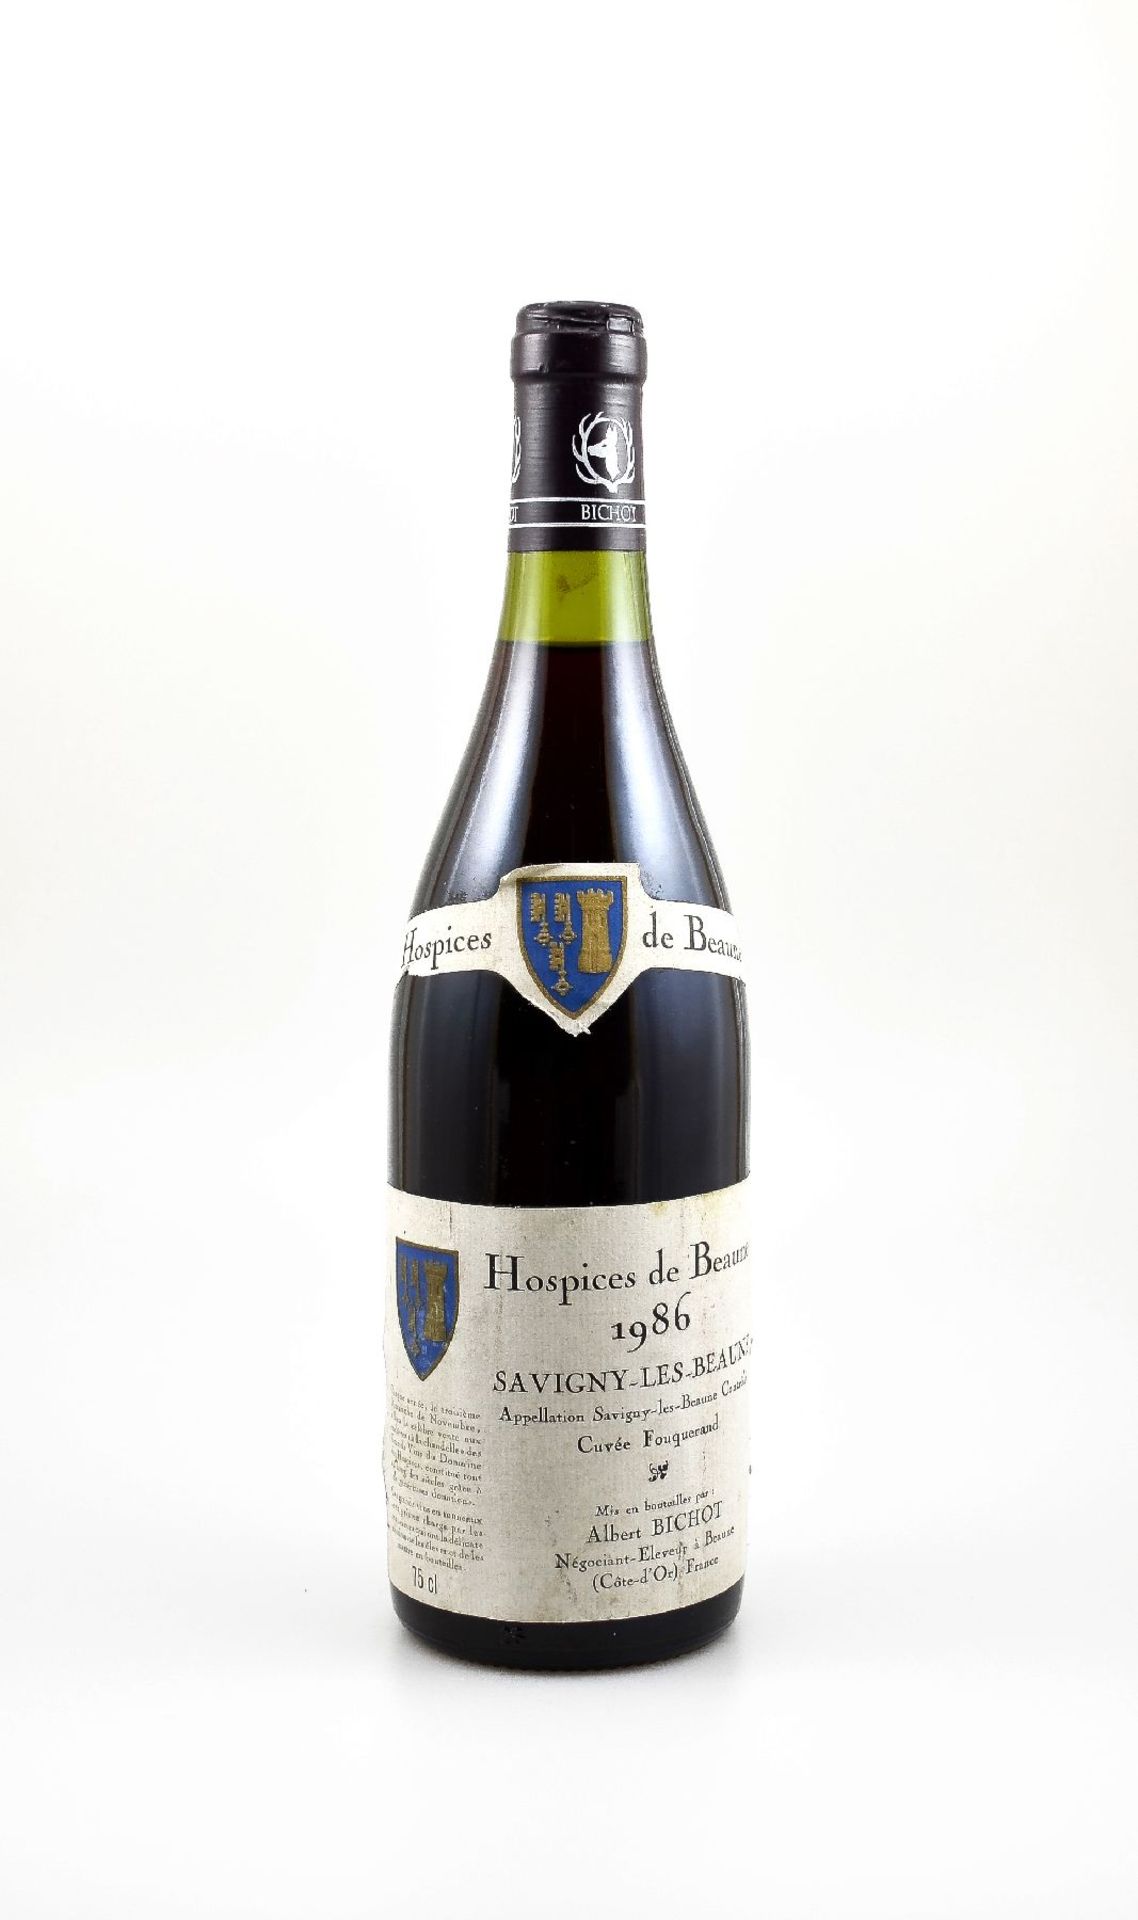 1 bottle 1986 Hospices de Beaune, Savigny- Les-Beaune, Albert Bichot, Cote-D'Or, approx 75 cl,